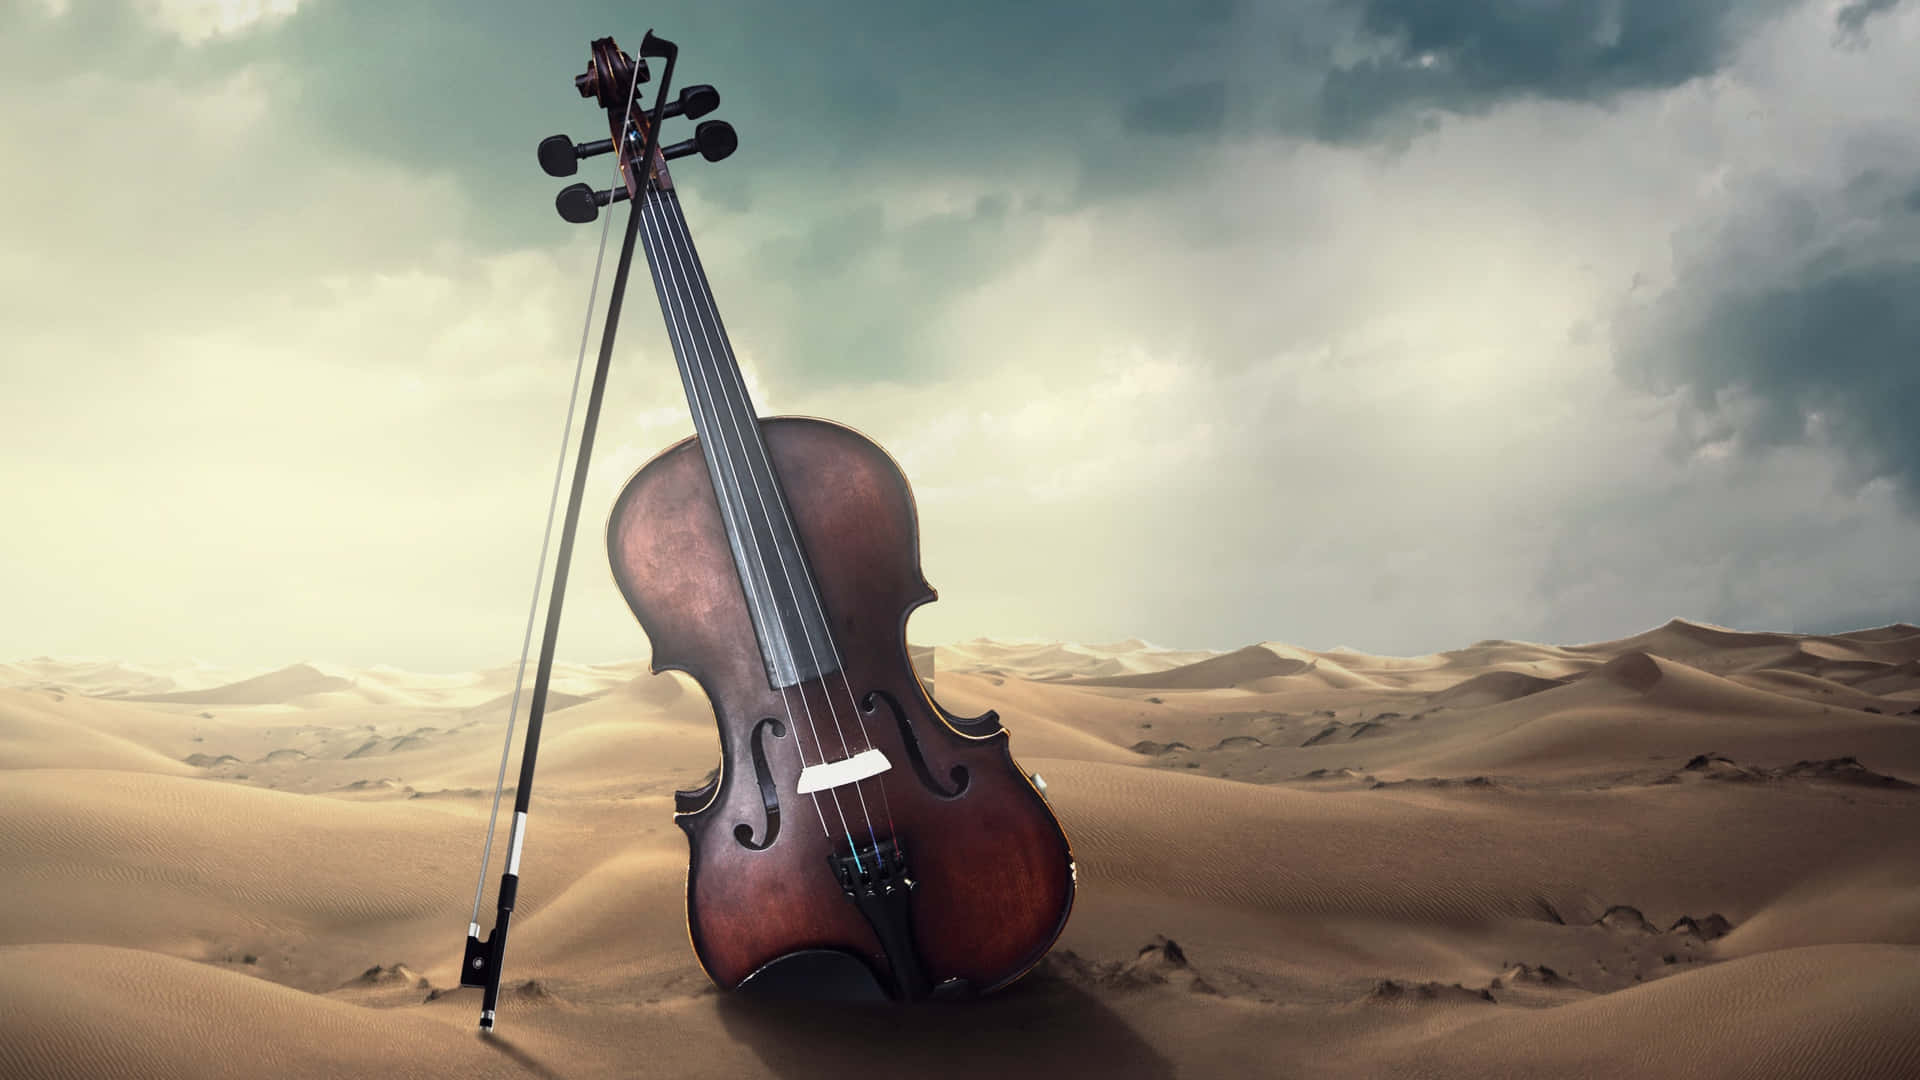 Violin og bue i ørkenbillede